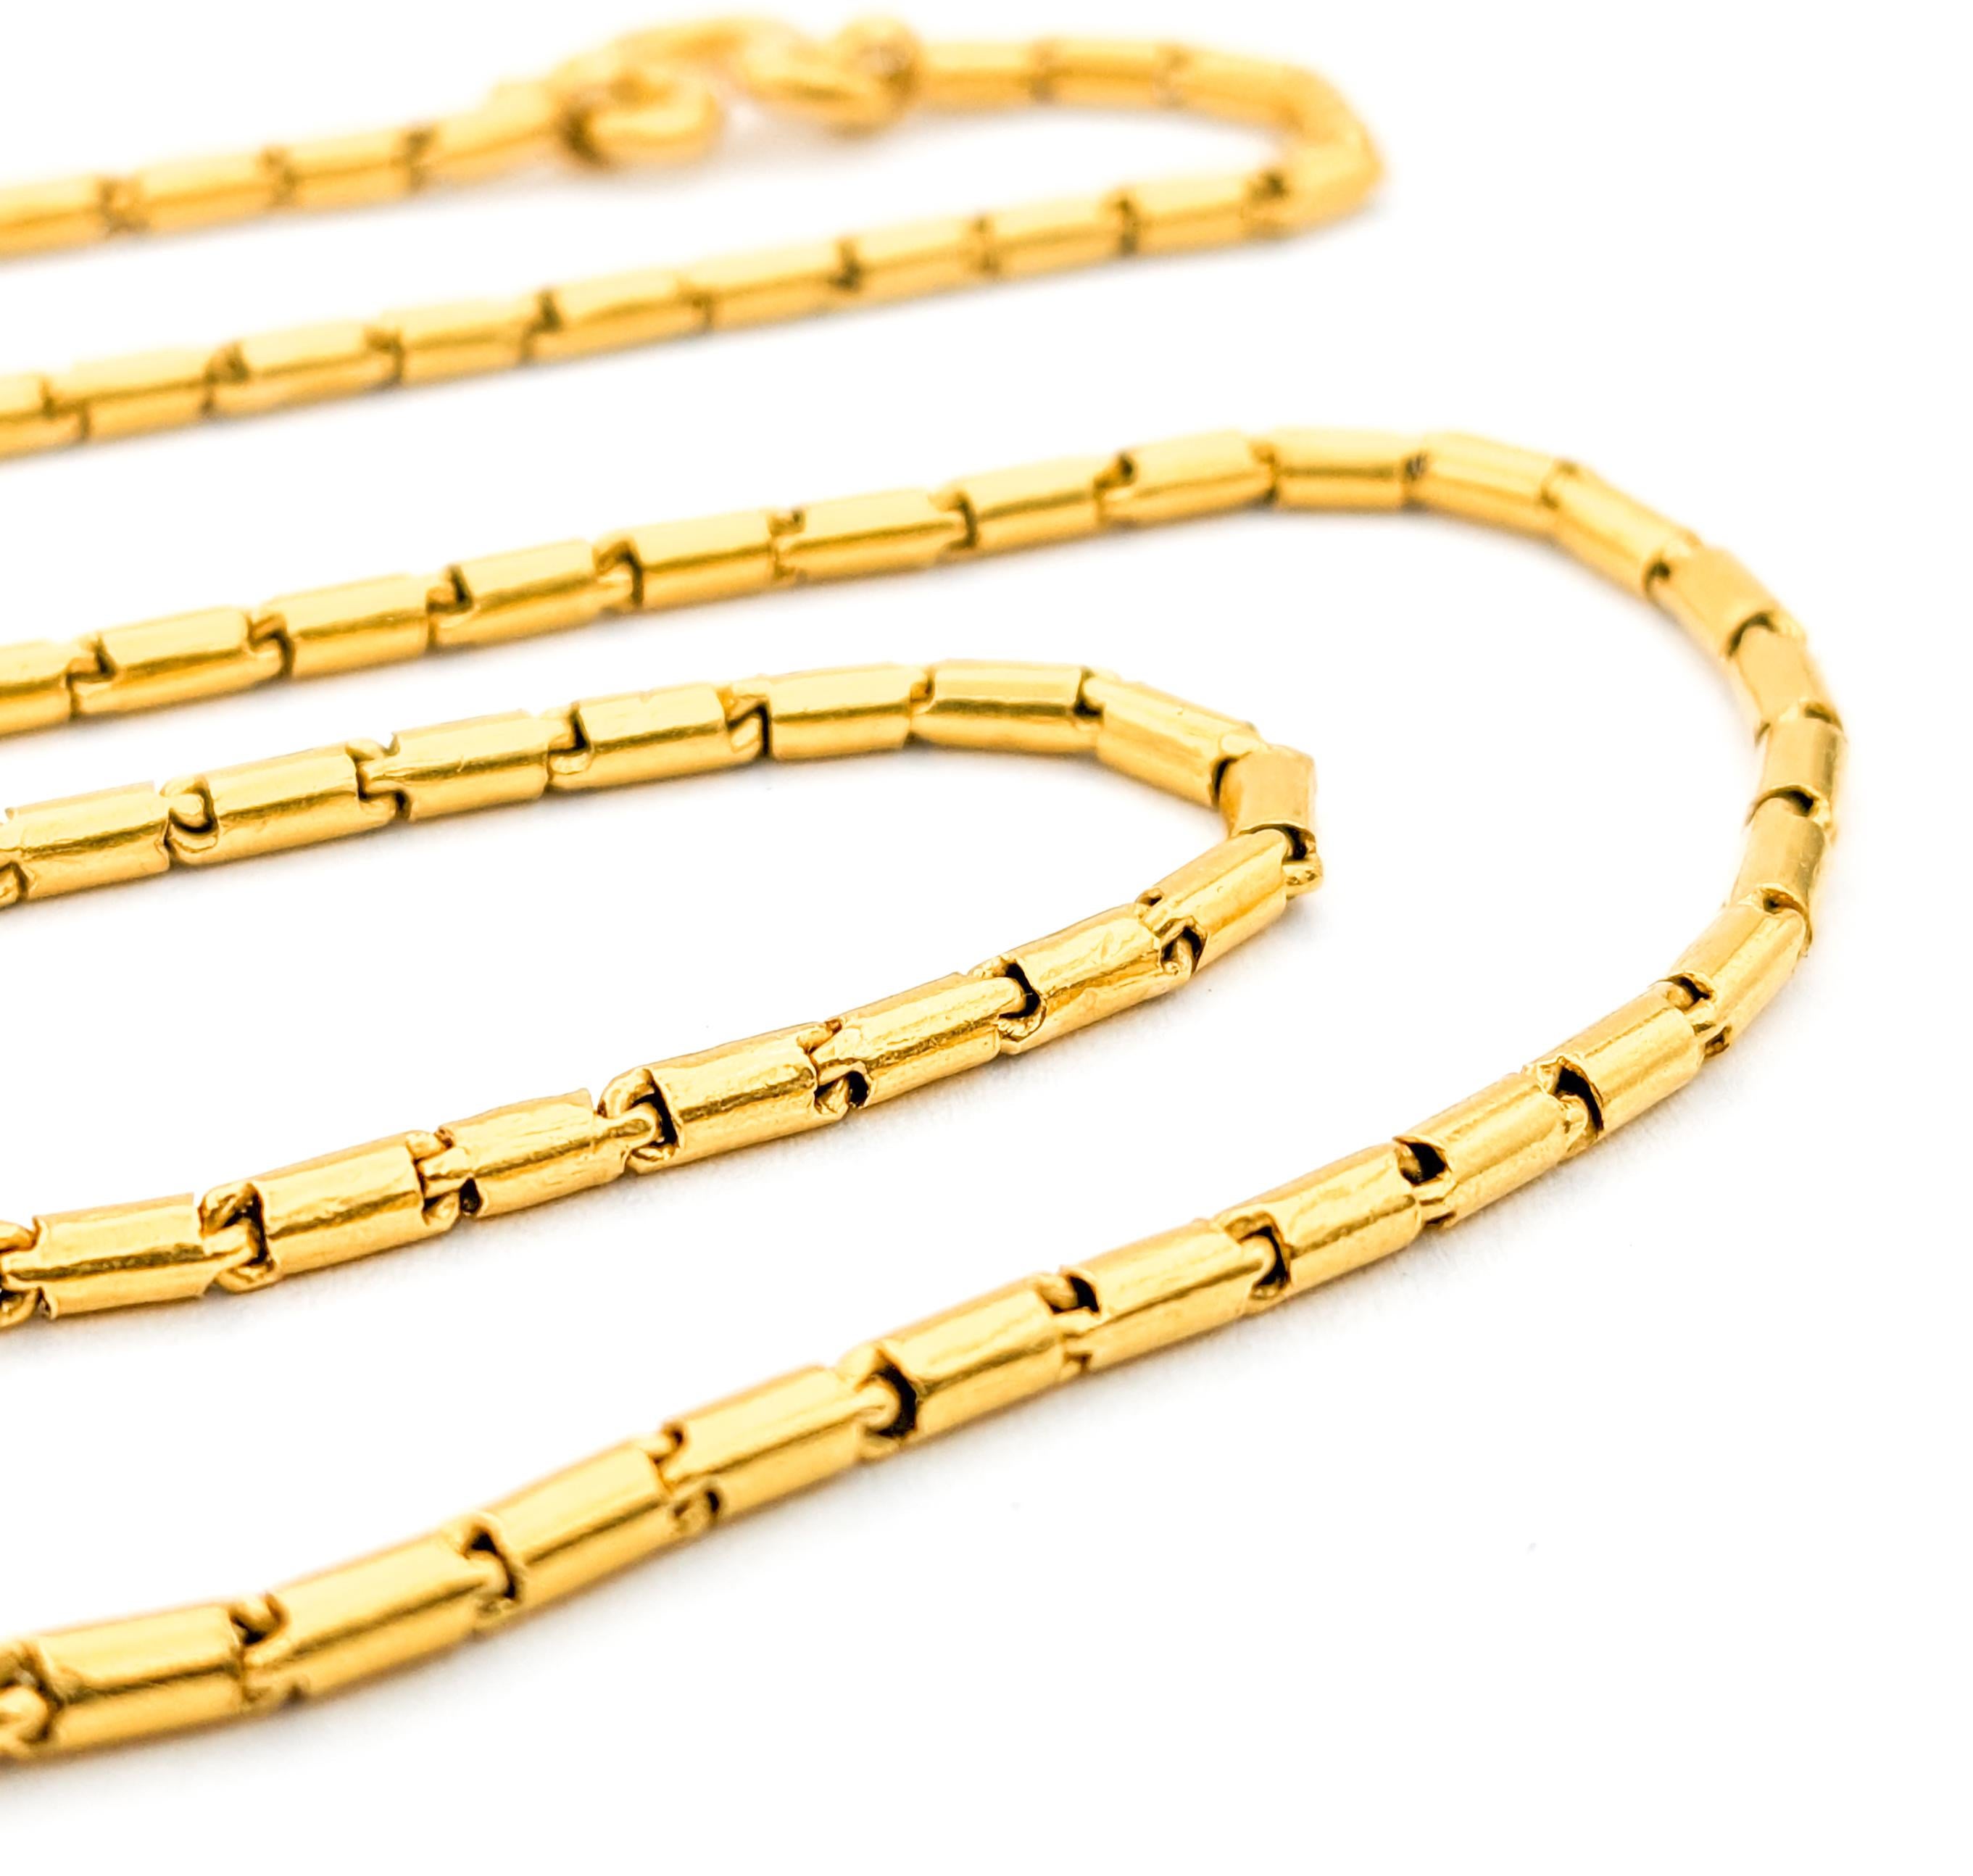 Collier à maillons baril vintage en or jaune 21 carats

Nous vous présentons notre exquis collier à chaîne, méticuleusement réalisé en or jaune luxueux 21 carats. Cette magnifique pièce présente un design unique de maillons en forme de tonneau, avec